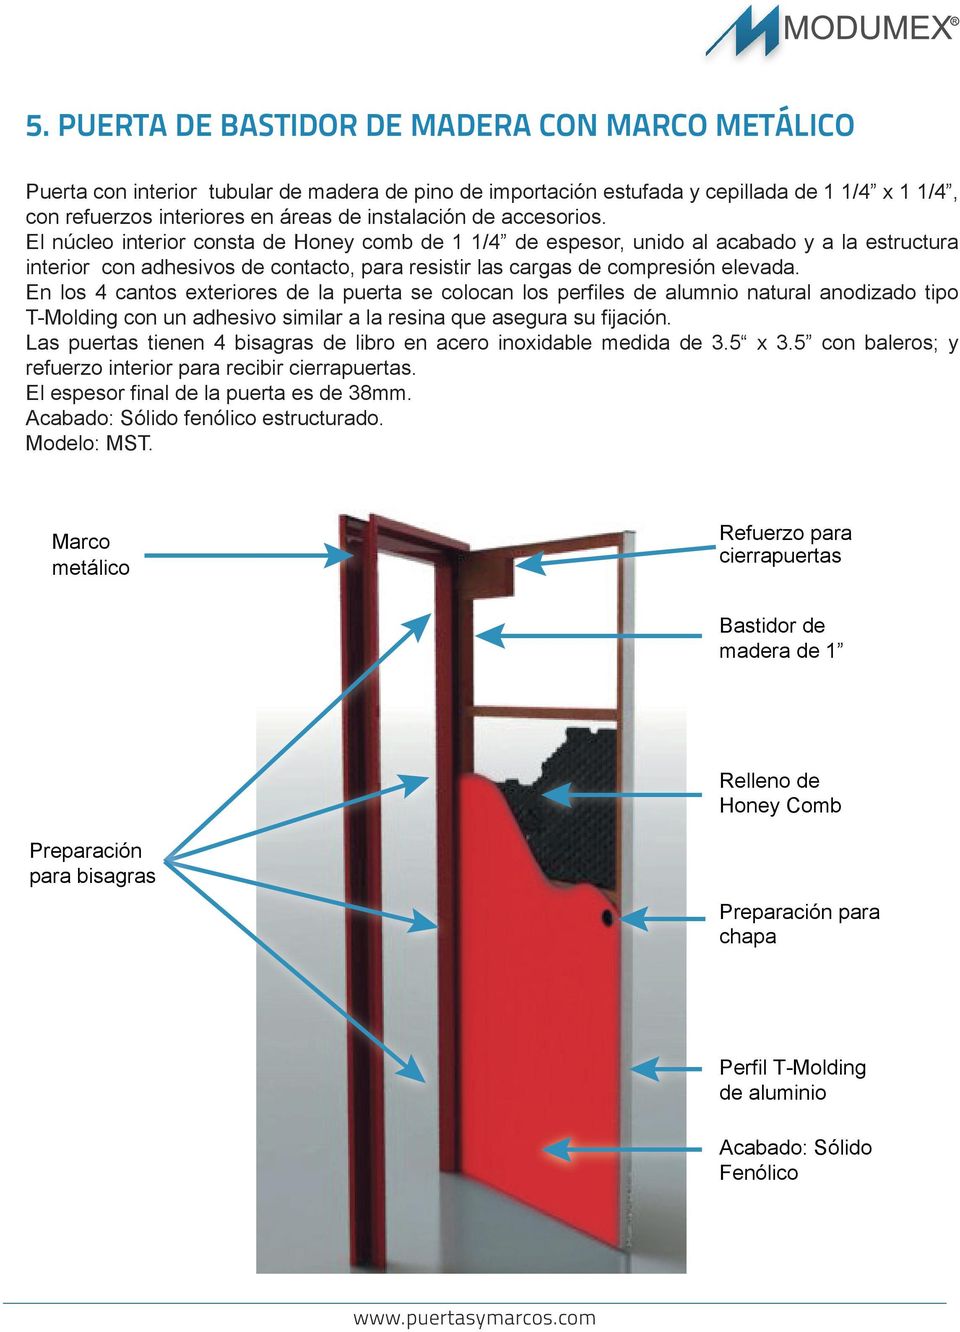 En los 4 cantos exteriores de la puerta se colocan los perfiles de alumnio natural anodizado tipo T-Molding con un adhesivo similar a la resina que asegura su fijación.